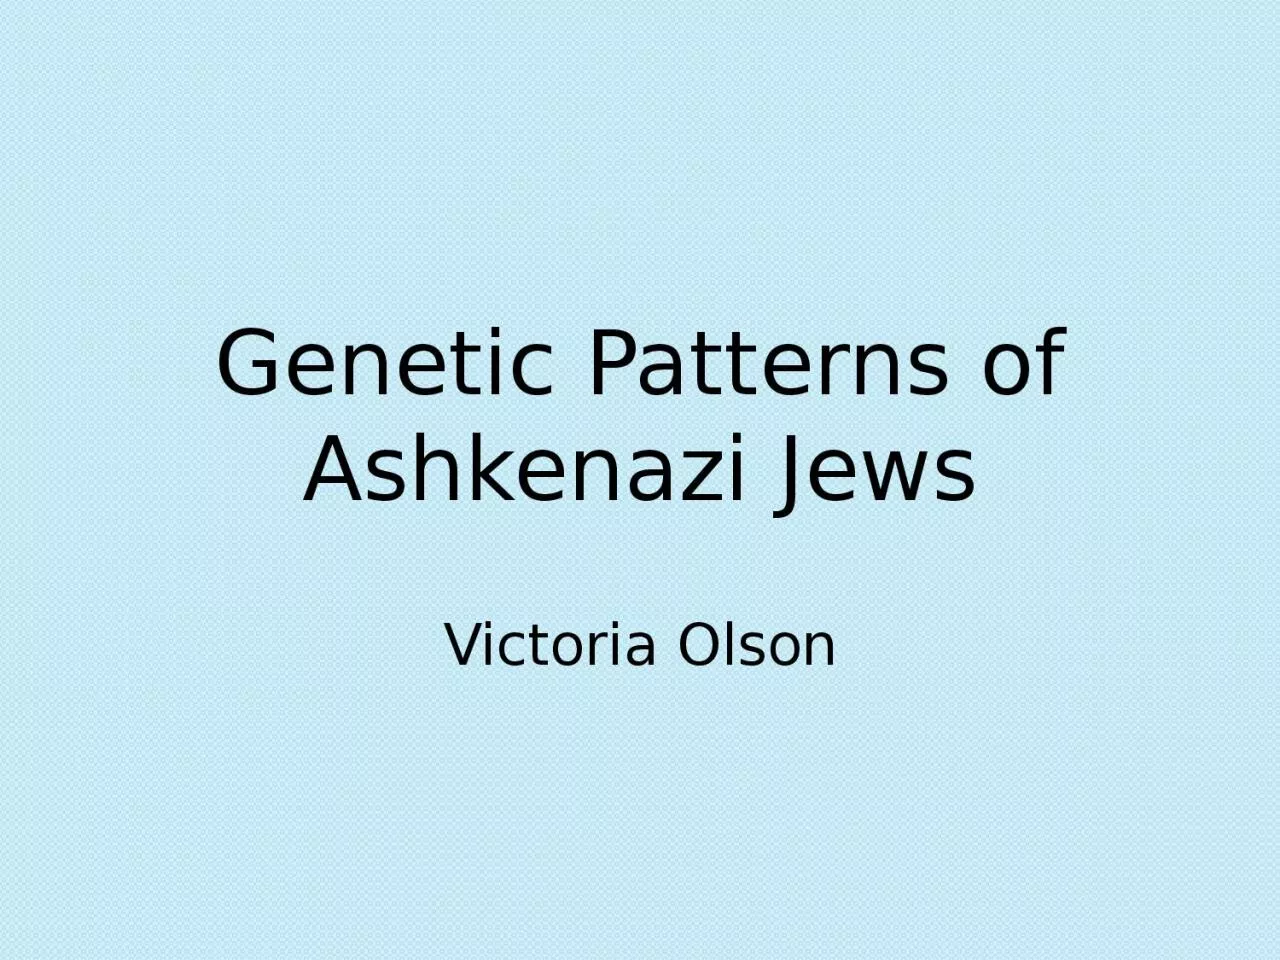 Genetic Patterns of Ashkenazi Jews